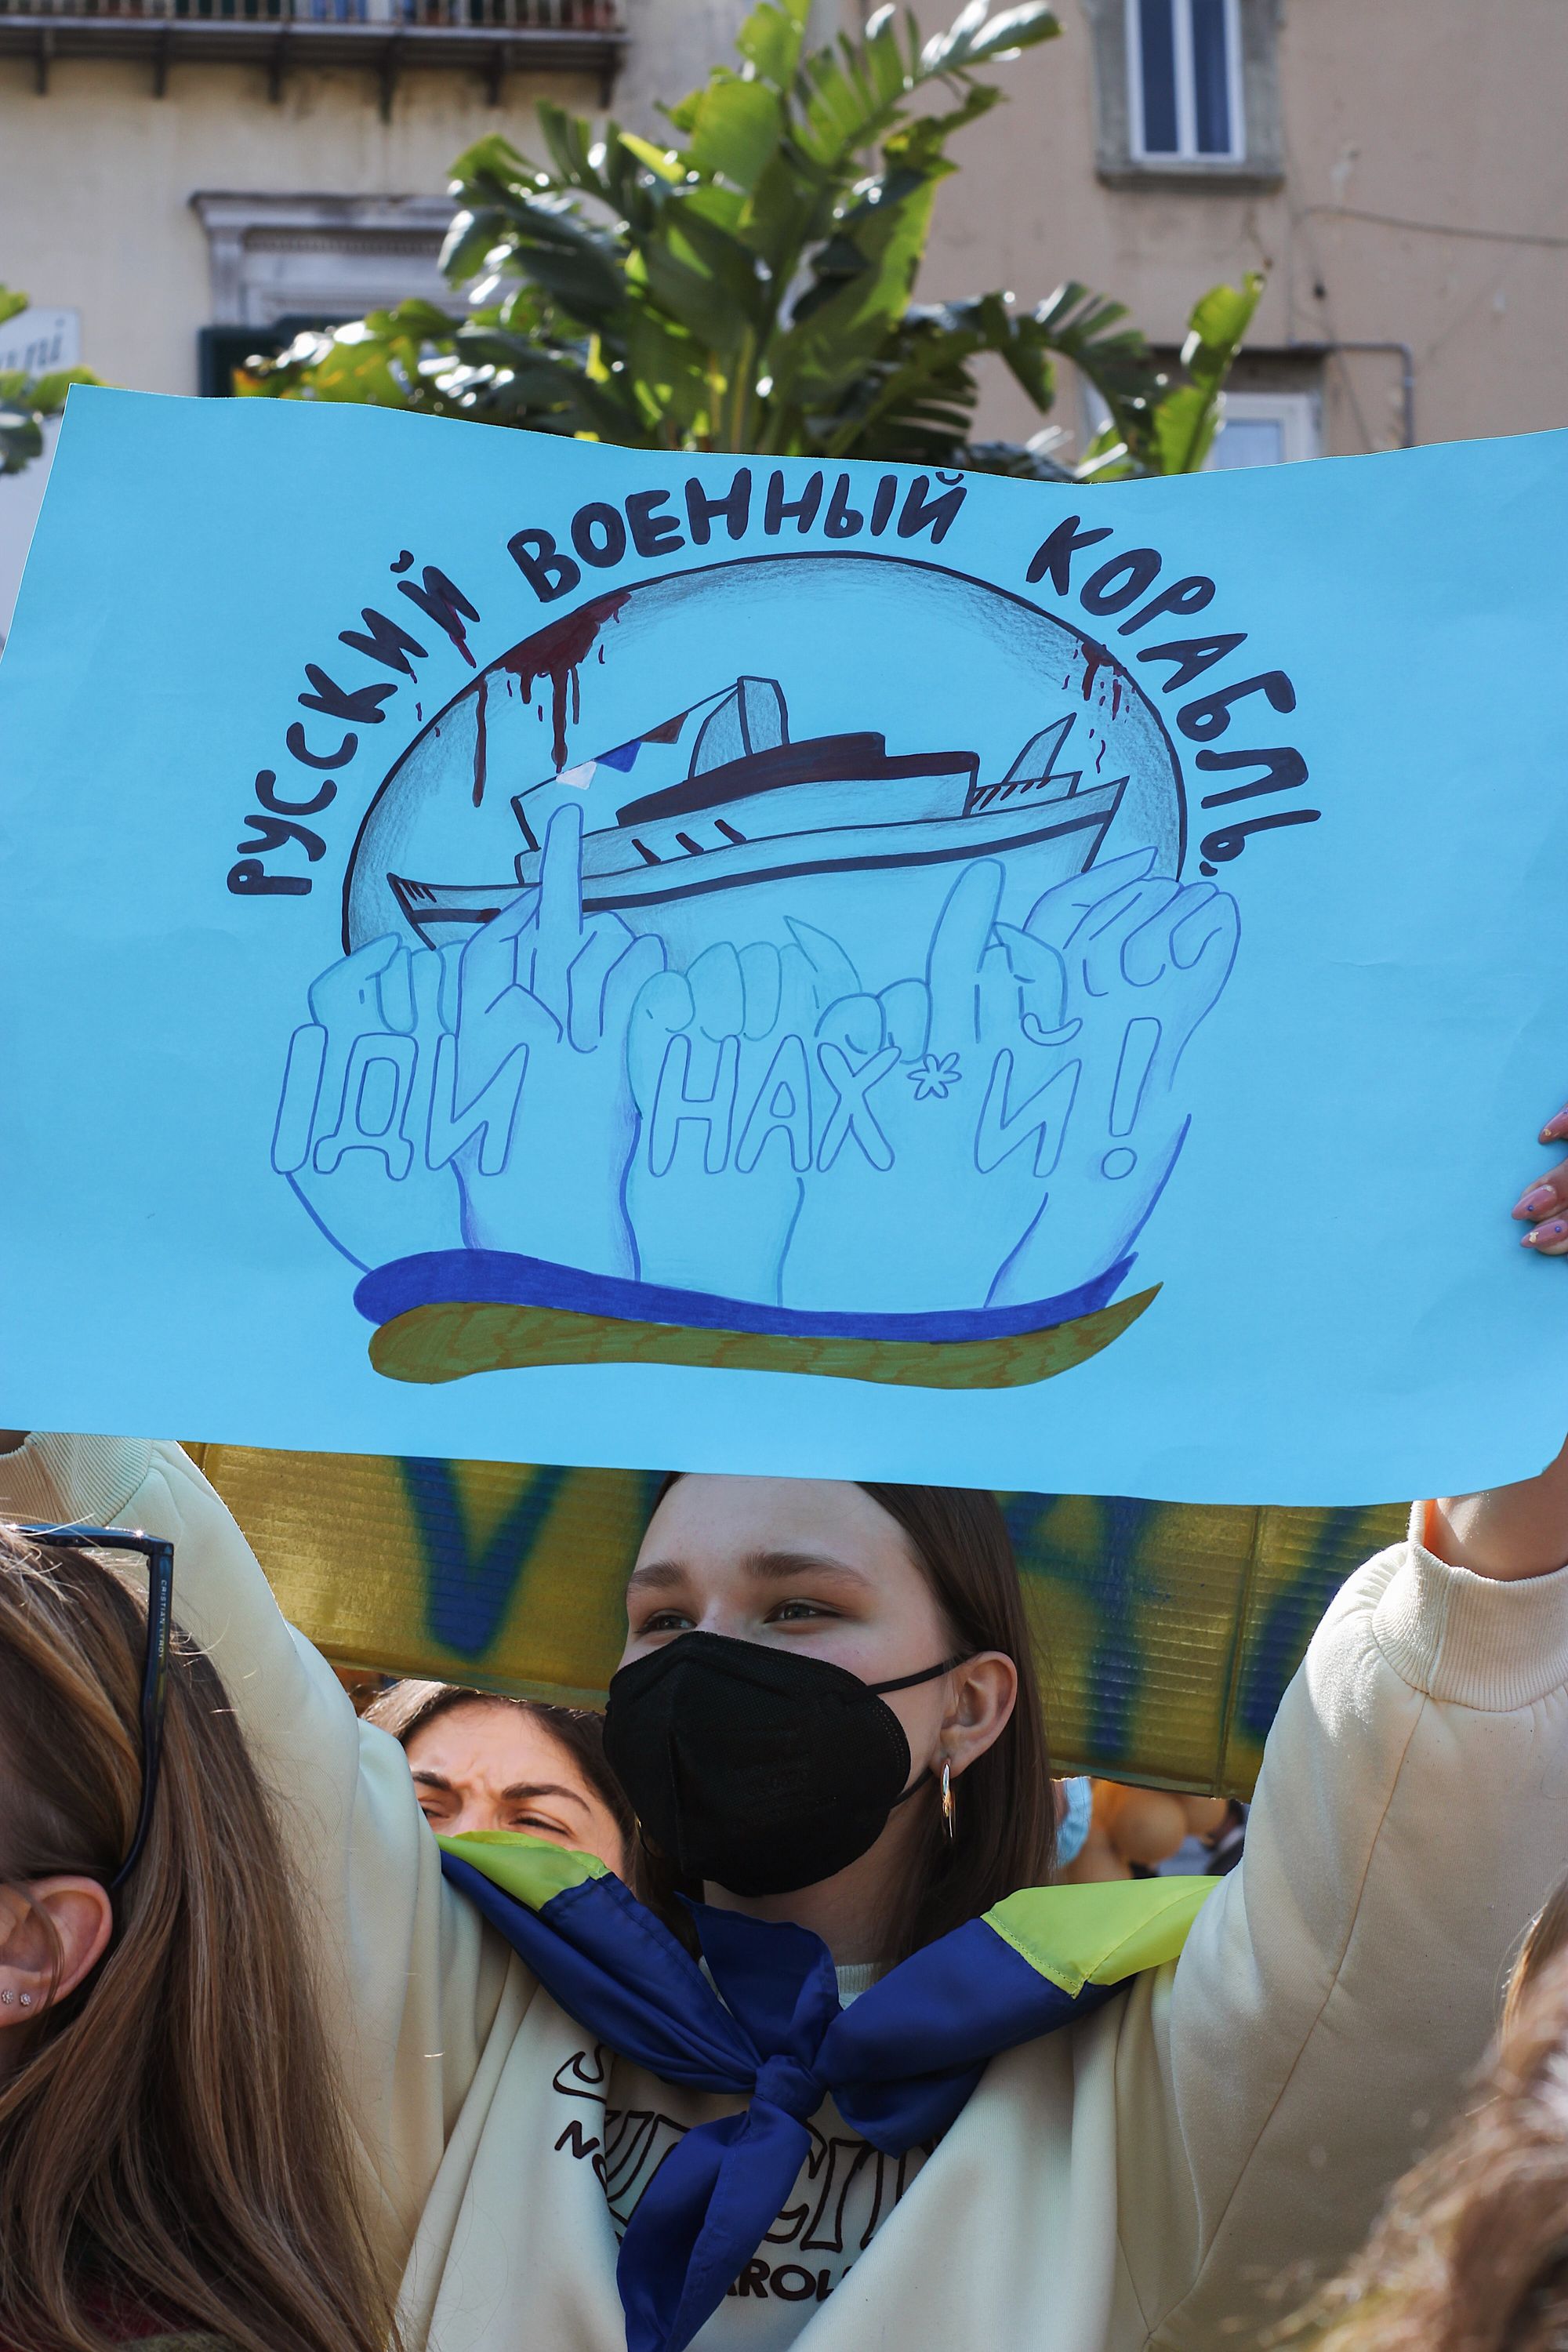                     Lachowski: Celem Putina jest zniszczenie narodu ukraińskiego
                              